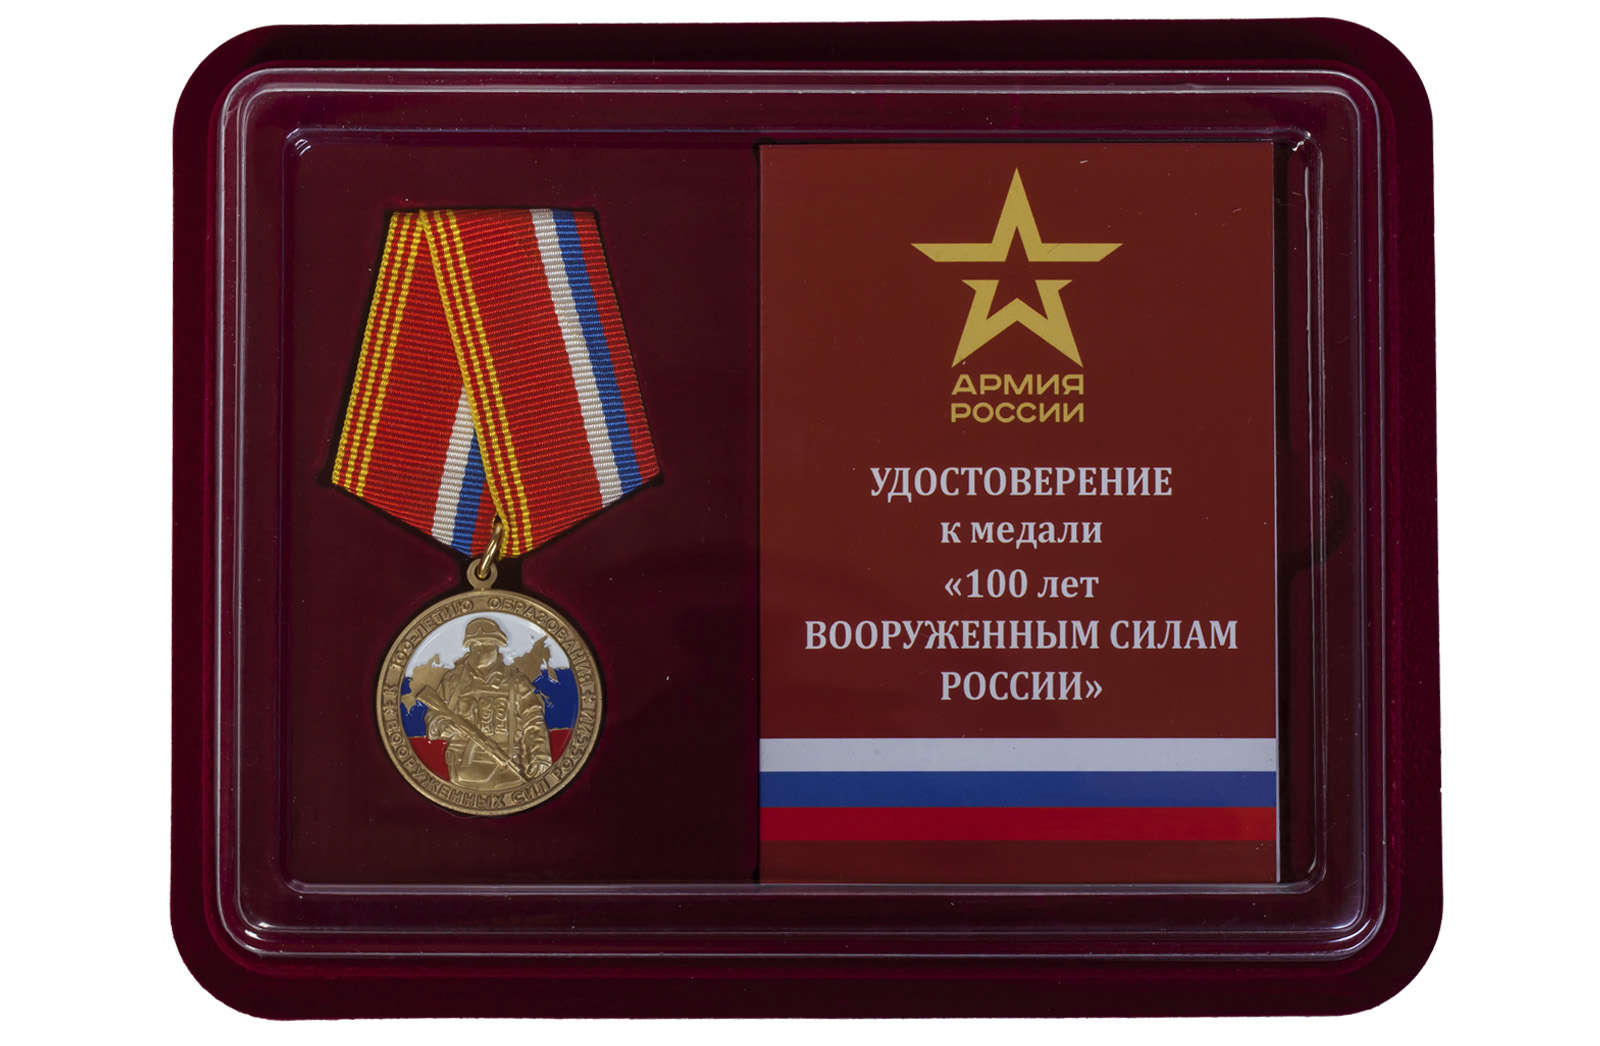 Купить юбилейная медаль к 100-летию образования Вооруженных сил России в подарок